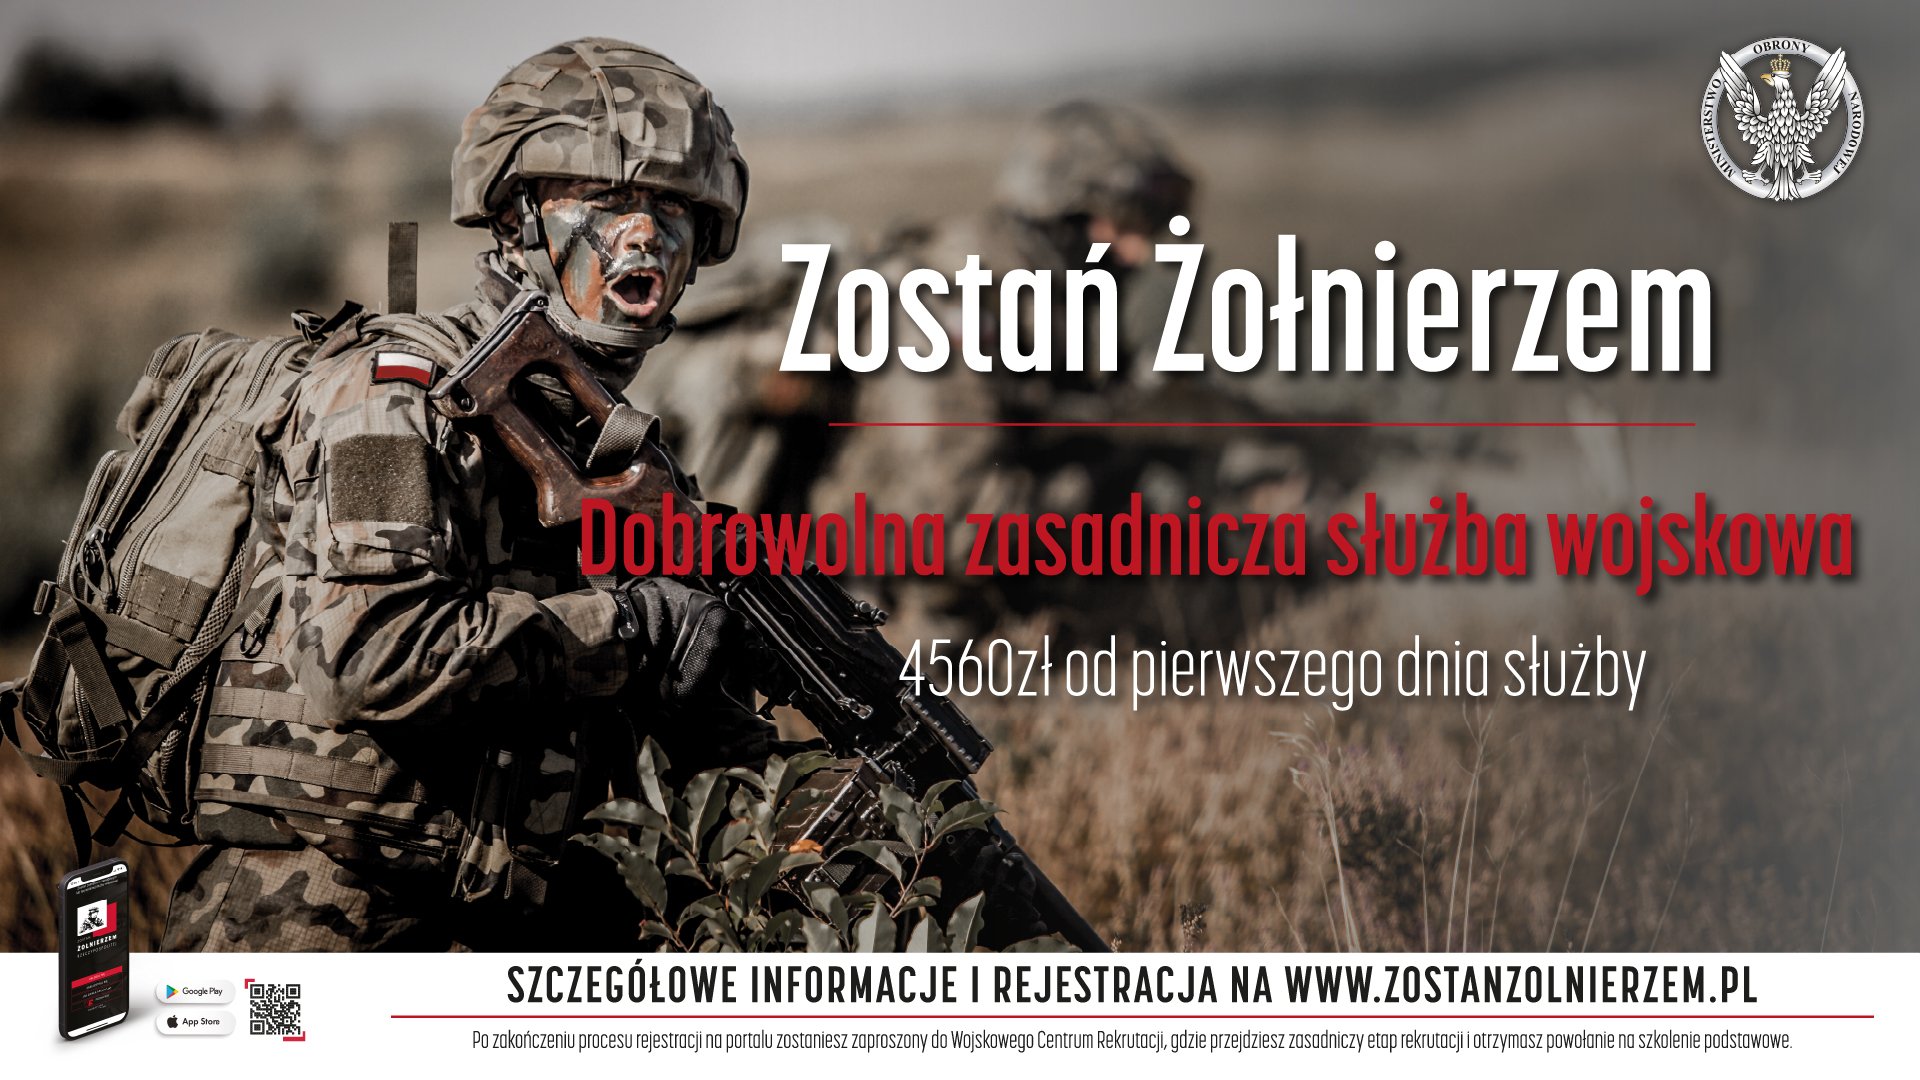 plakat zostań żołnierzem - dobrowolna zasadnicza służba wojskowa